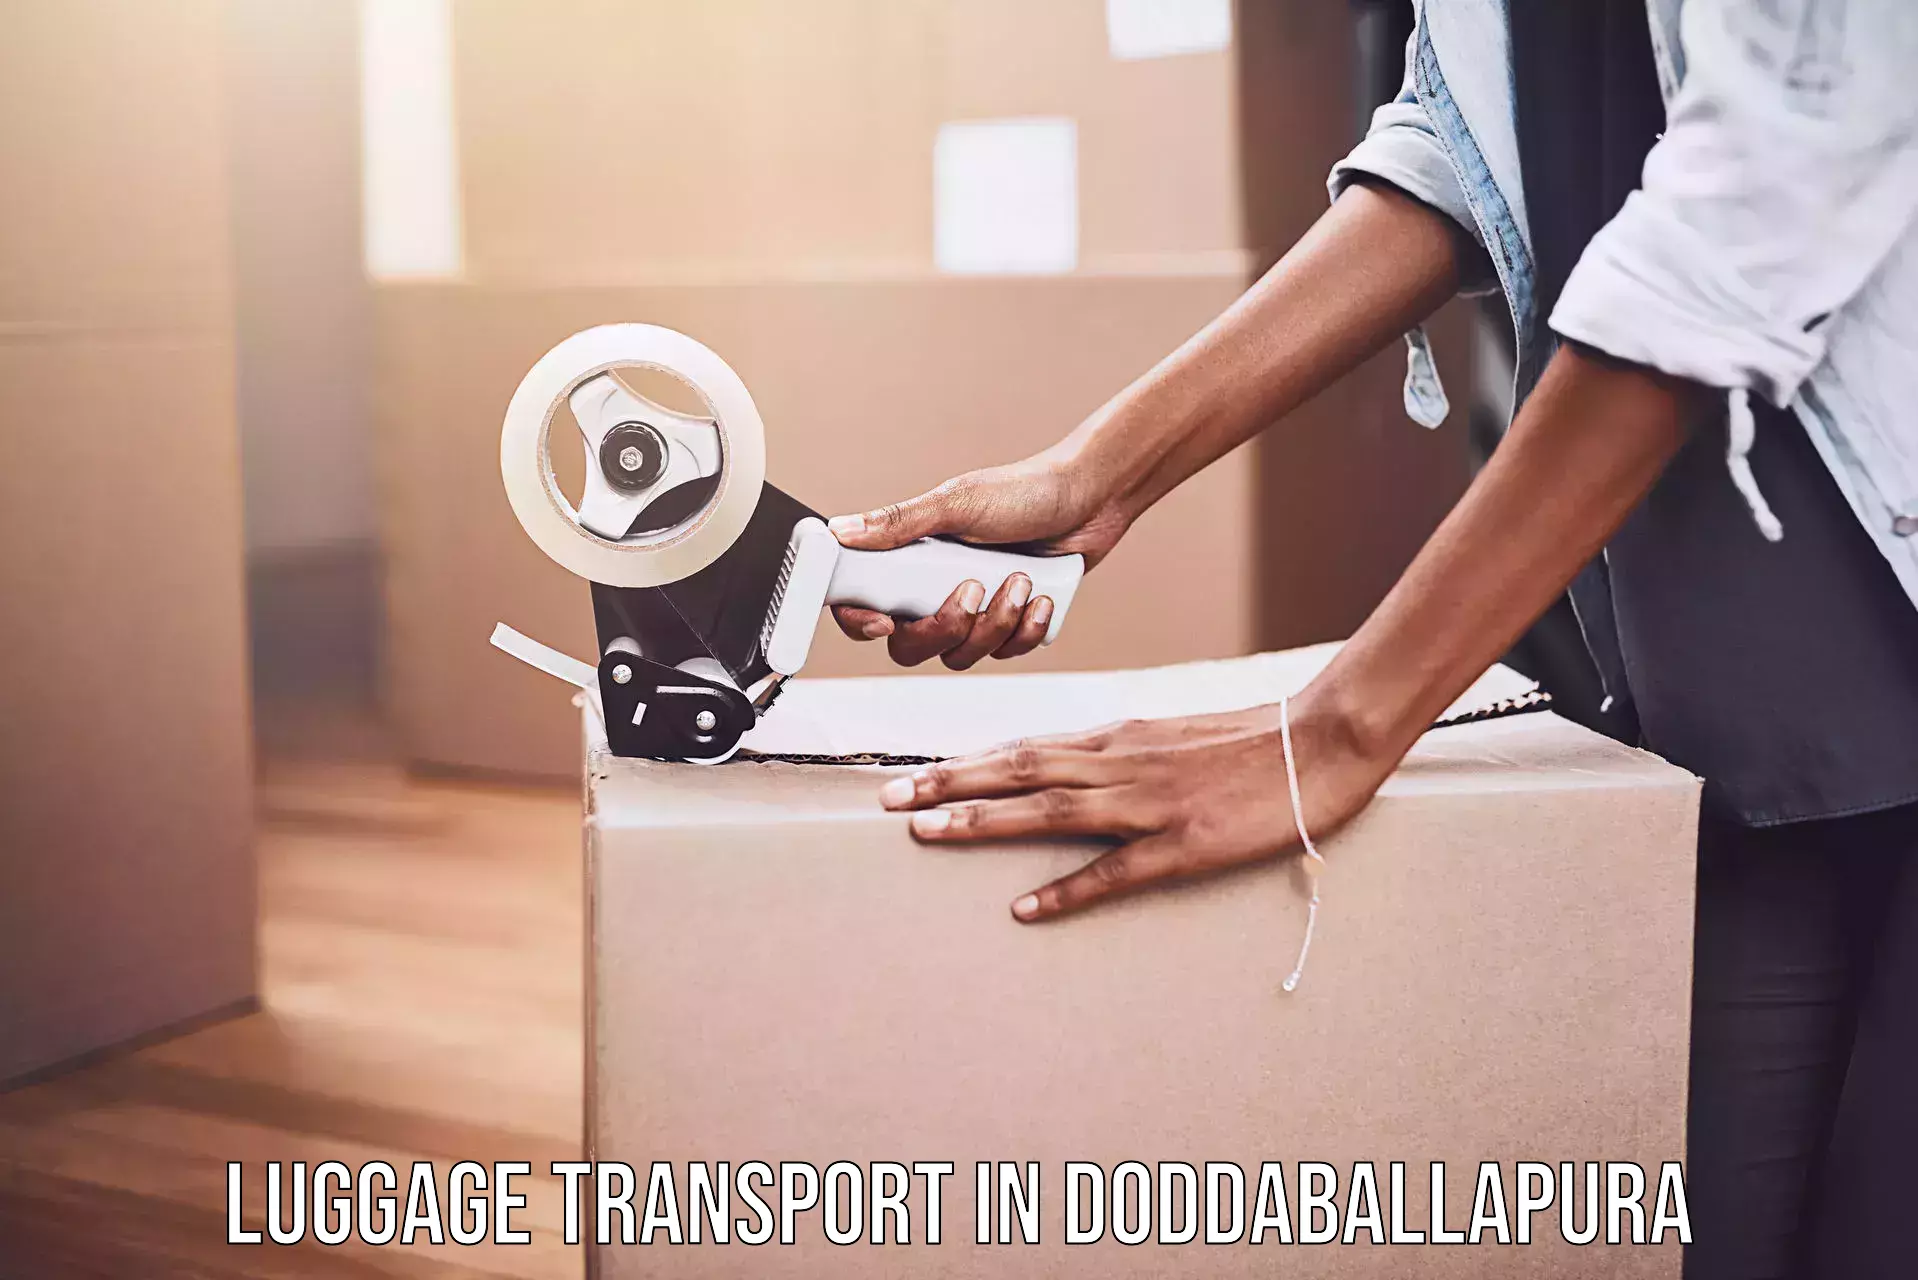 Baggage transport cost in Doddaballapura